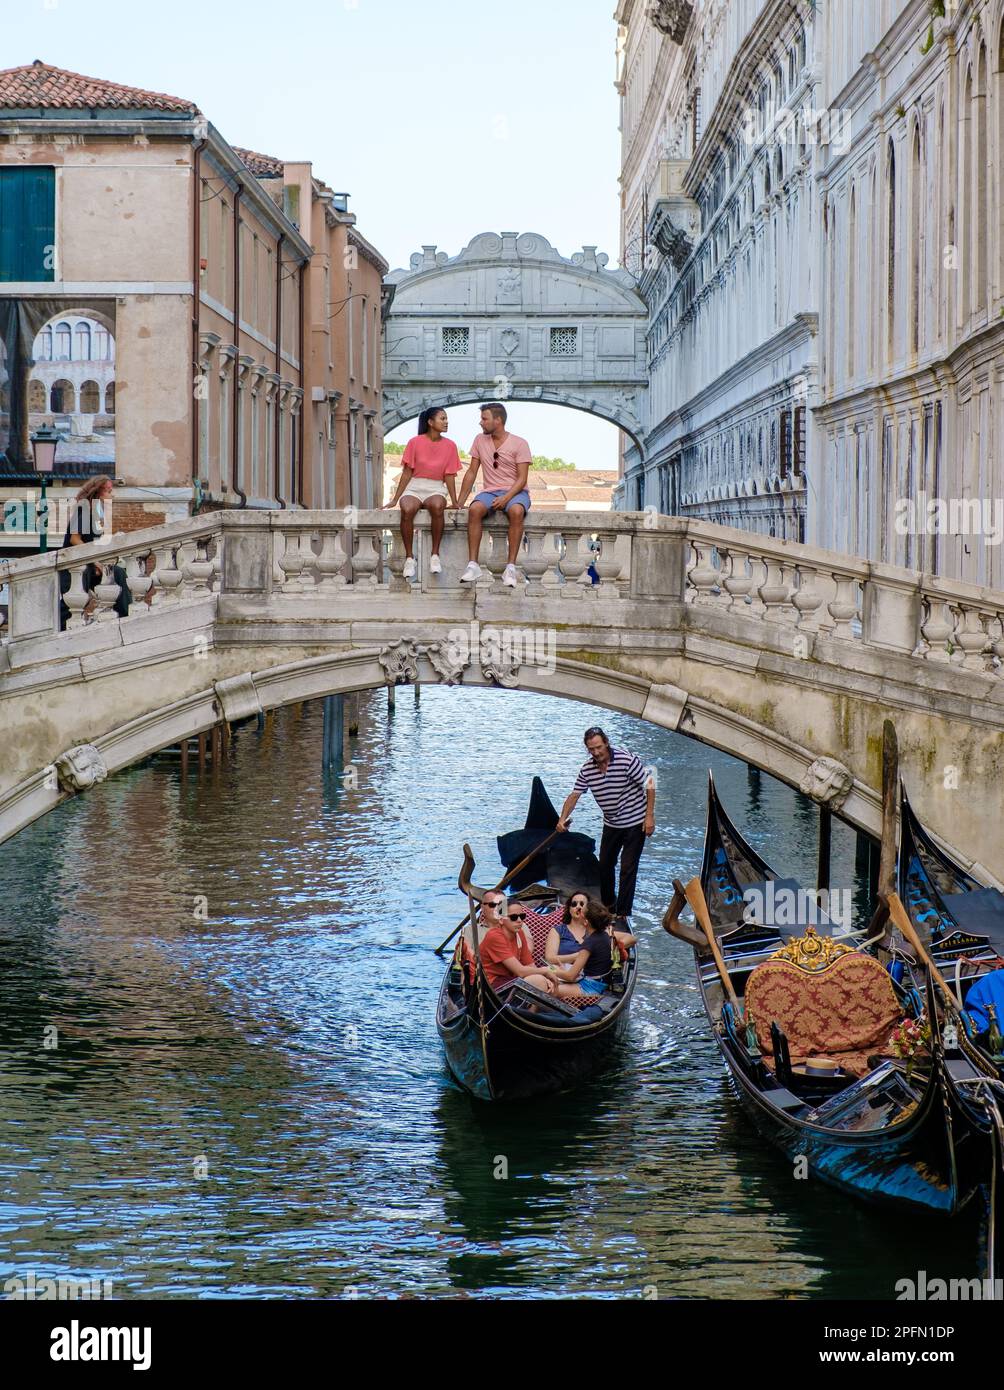 Venecia Gomnzola vaporeto - Architecture trips and tourism